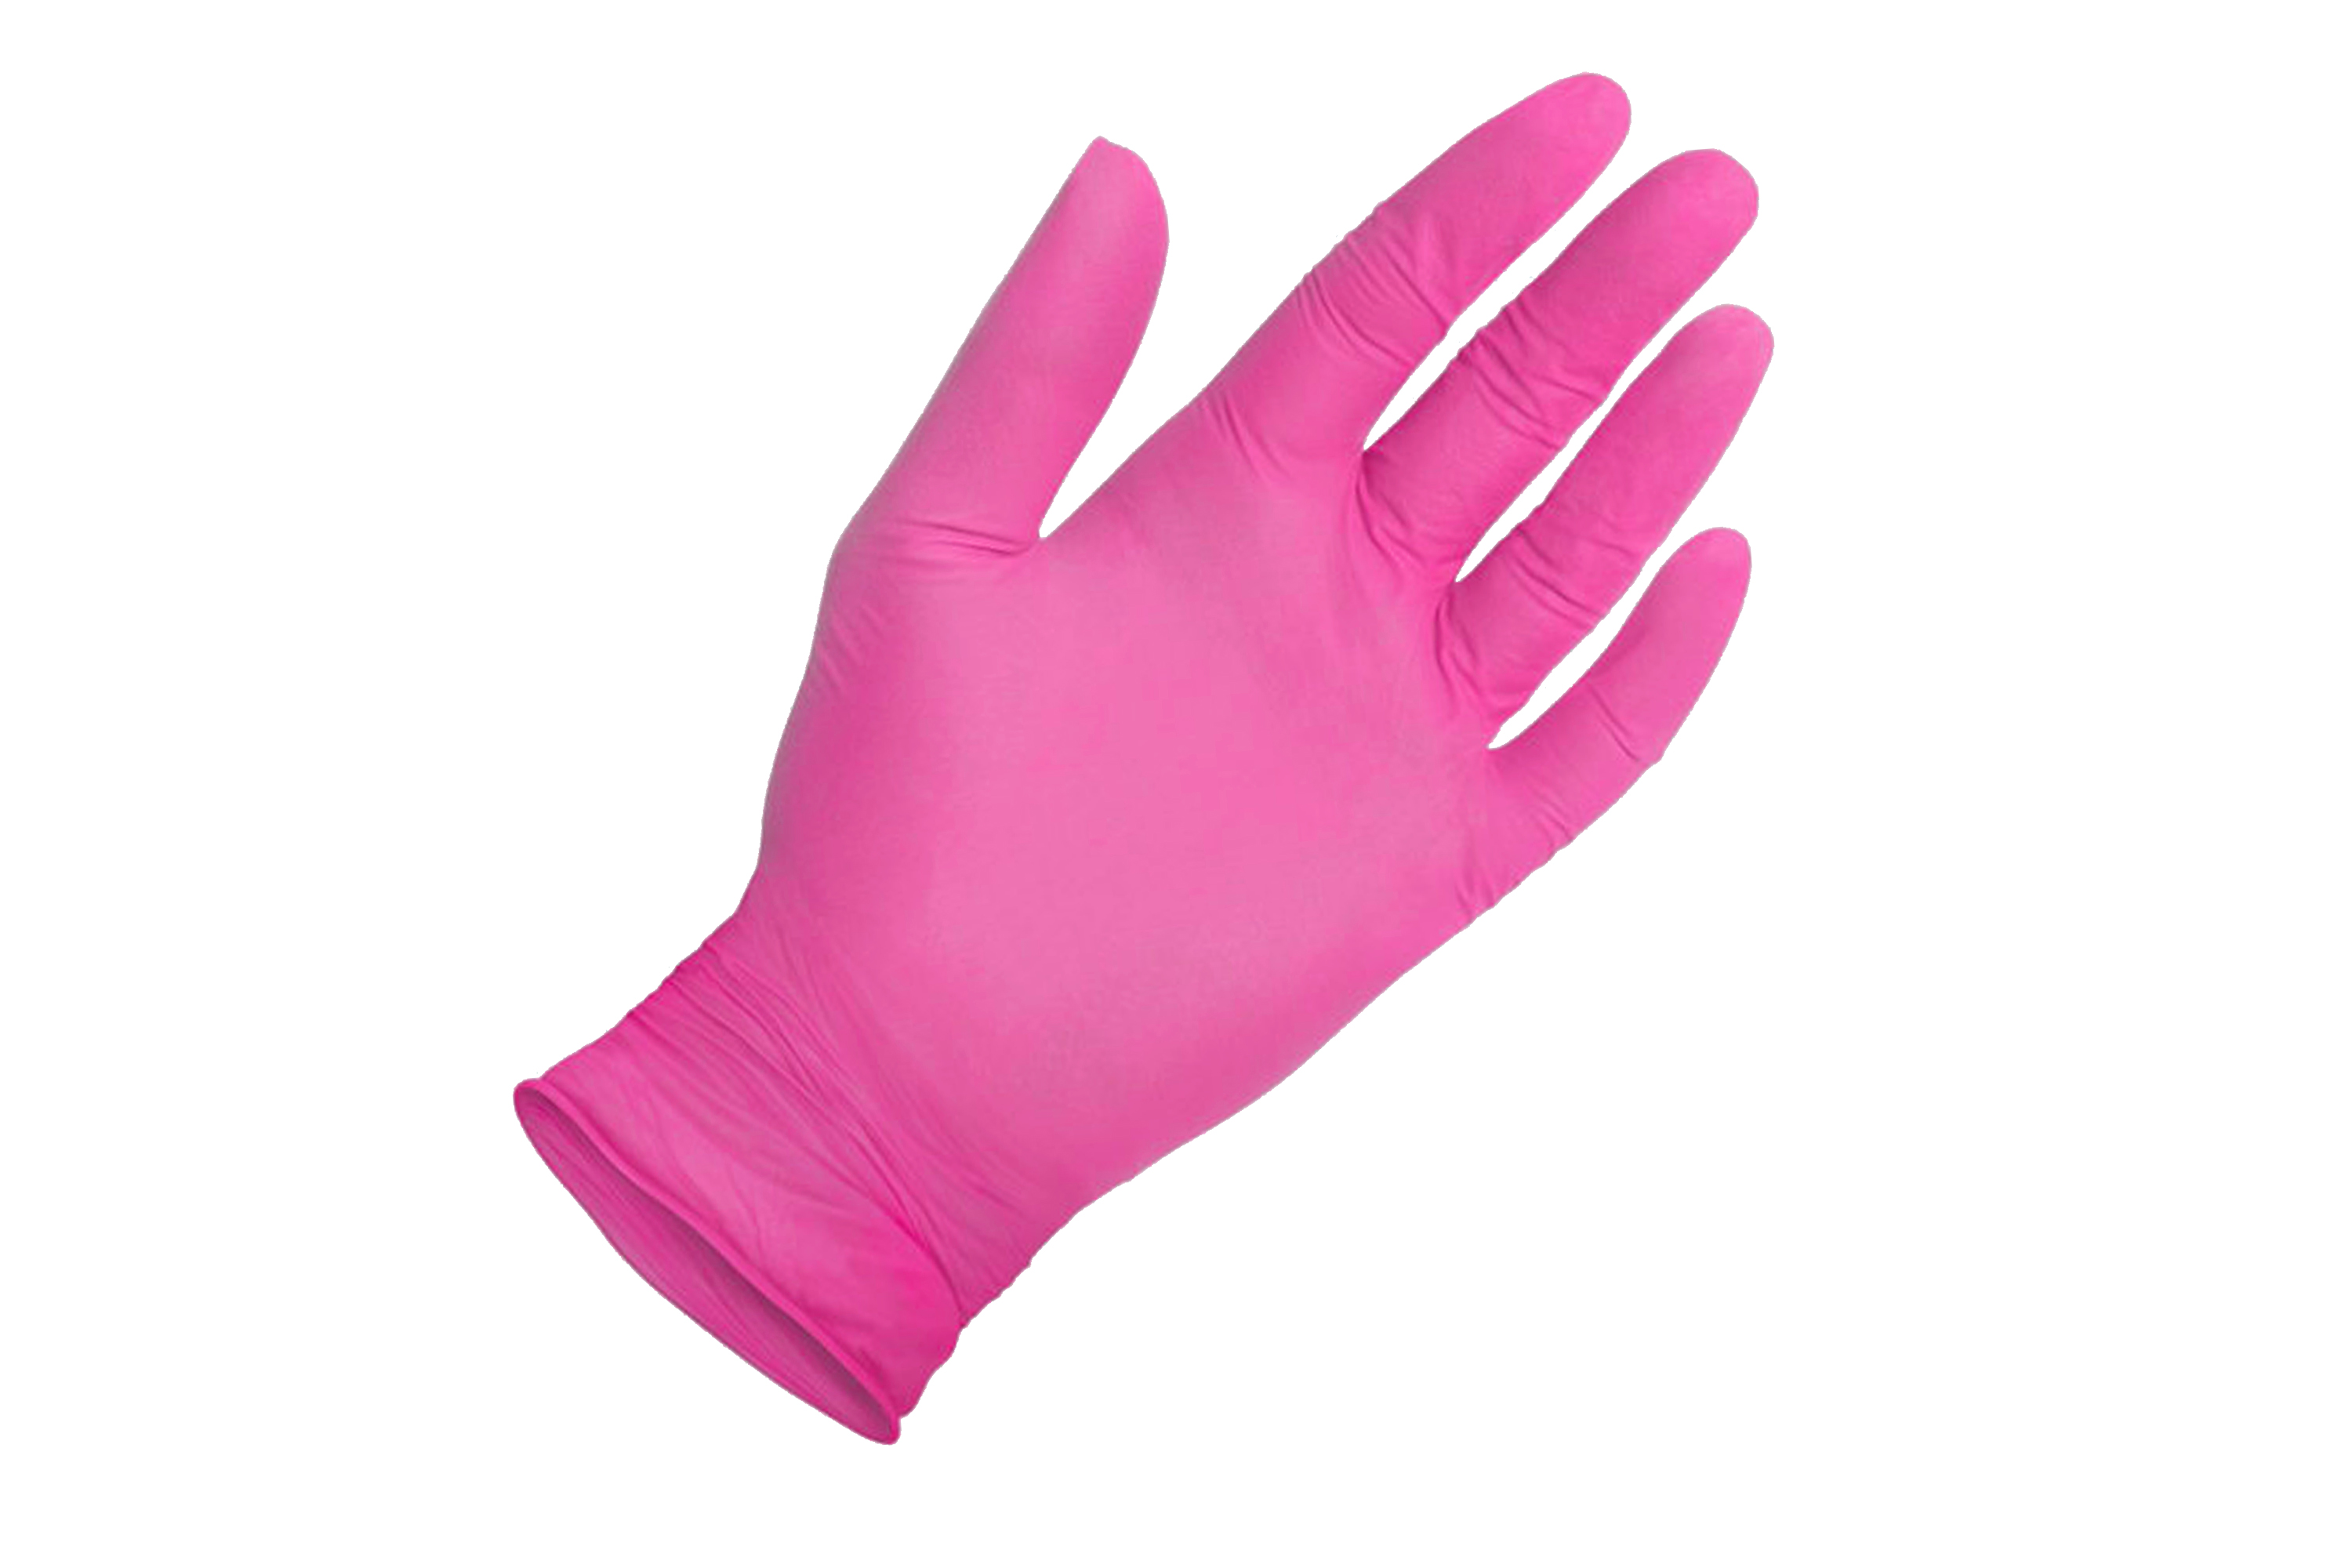 Pink Nitrile Gloves